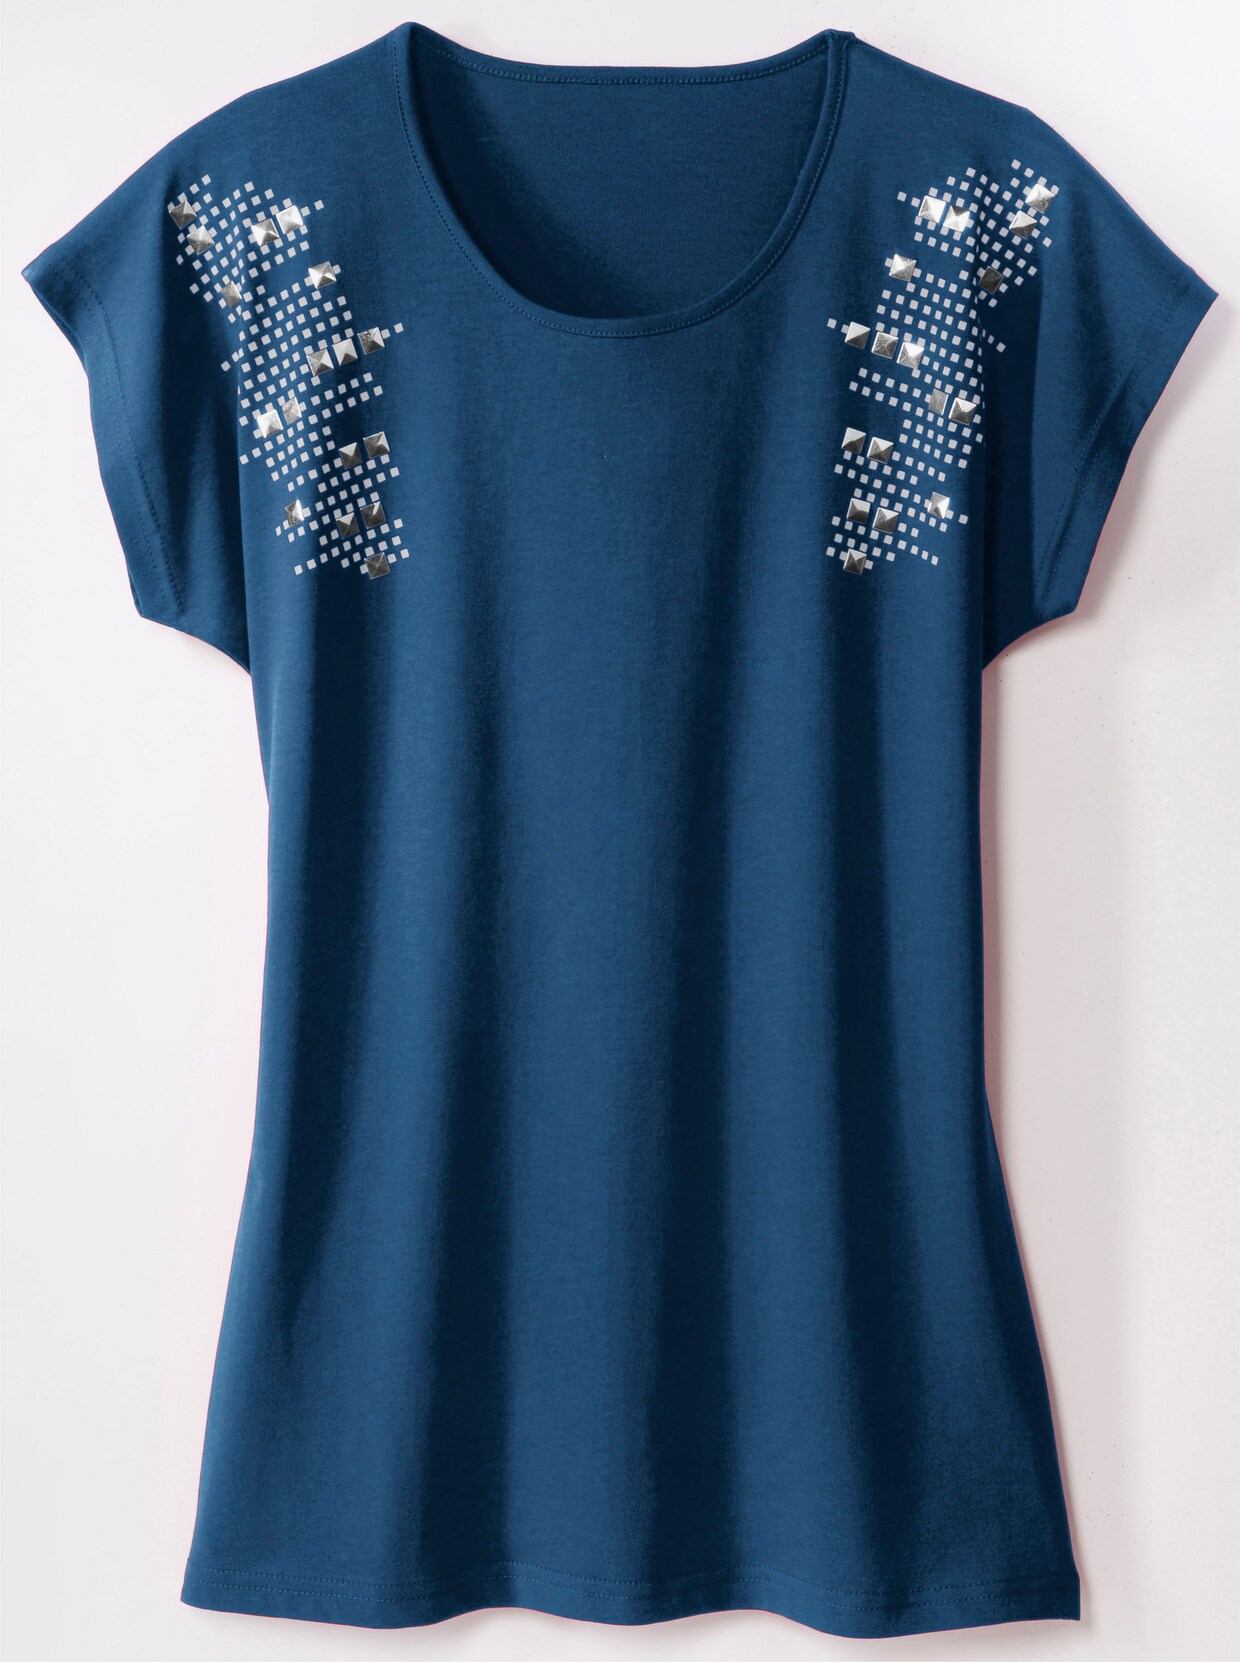 Tričko s krátkým rukávem - kobaltová modrá